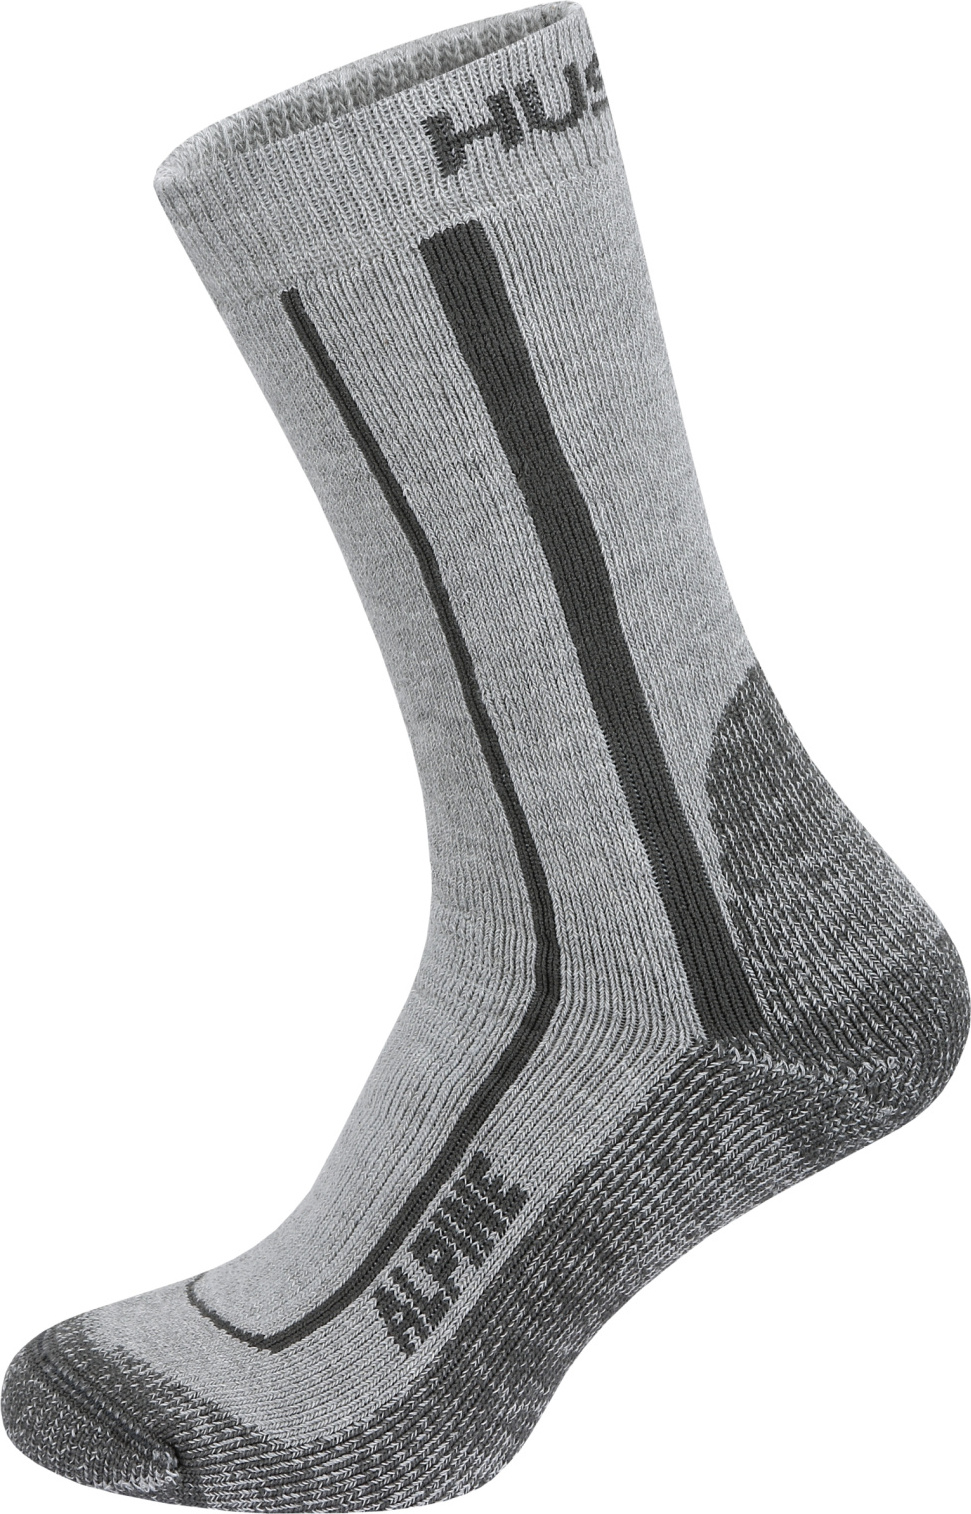 Unisex hřejivé ponožky HUSKY Alpine šedé Velikost: M (36-40)